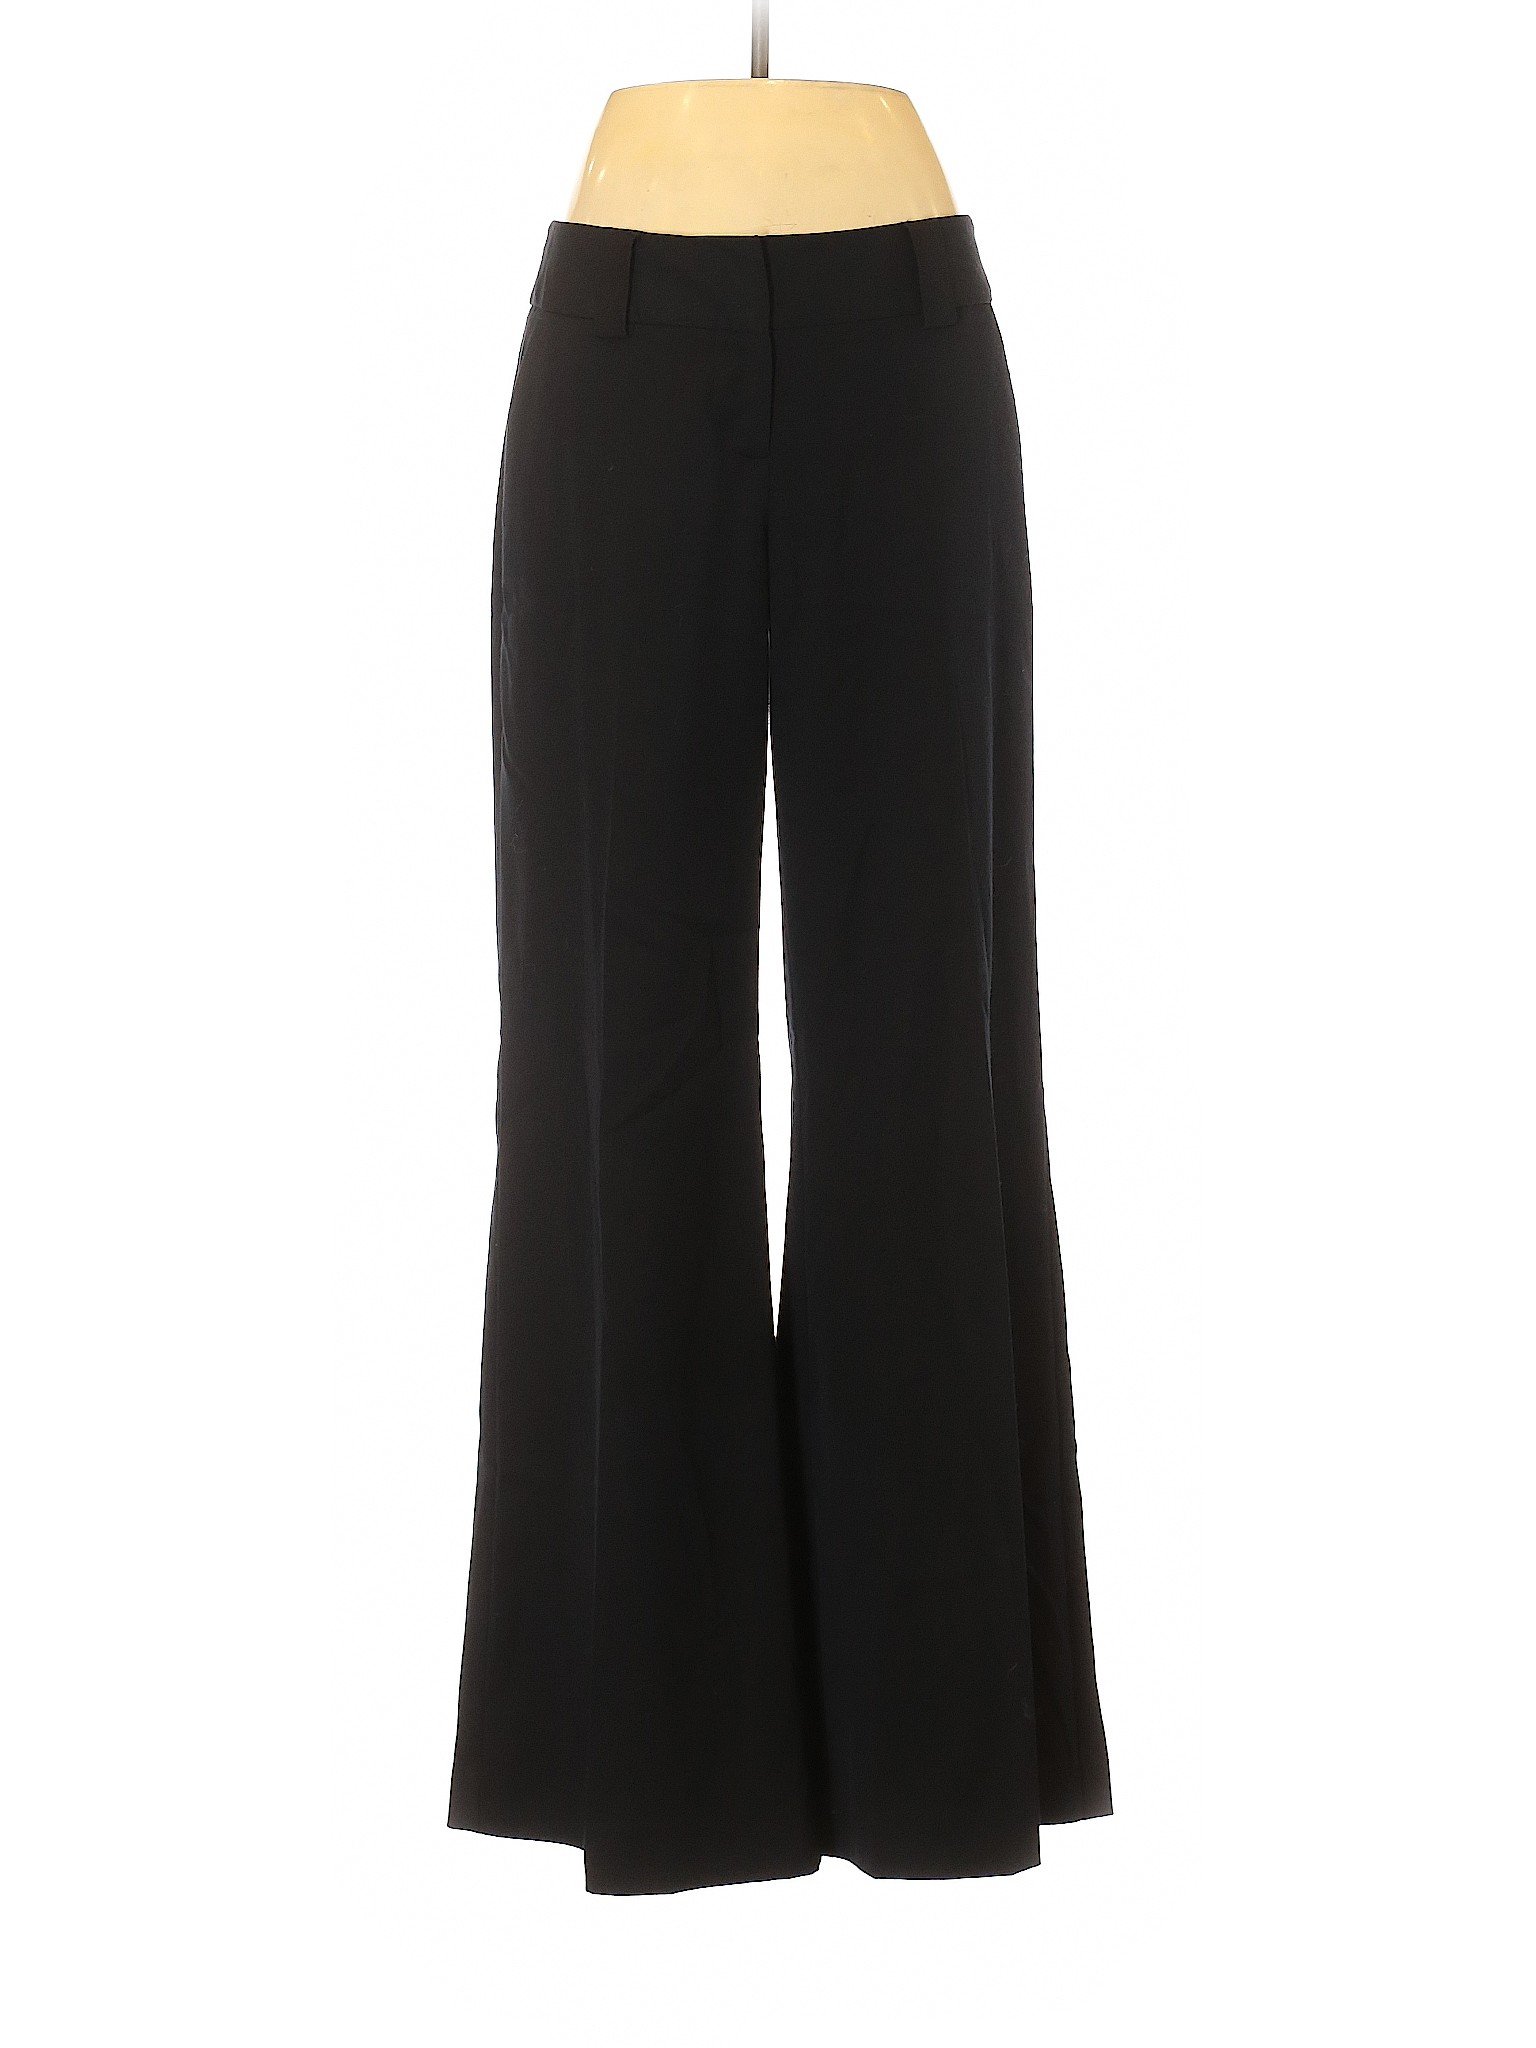 Elle Women Black Dress Pants 8 | eBay